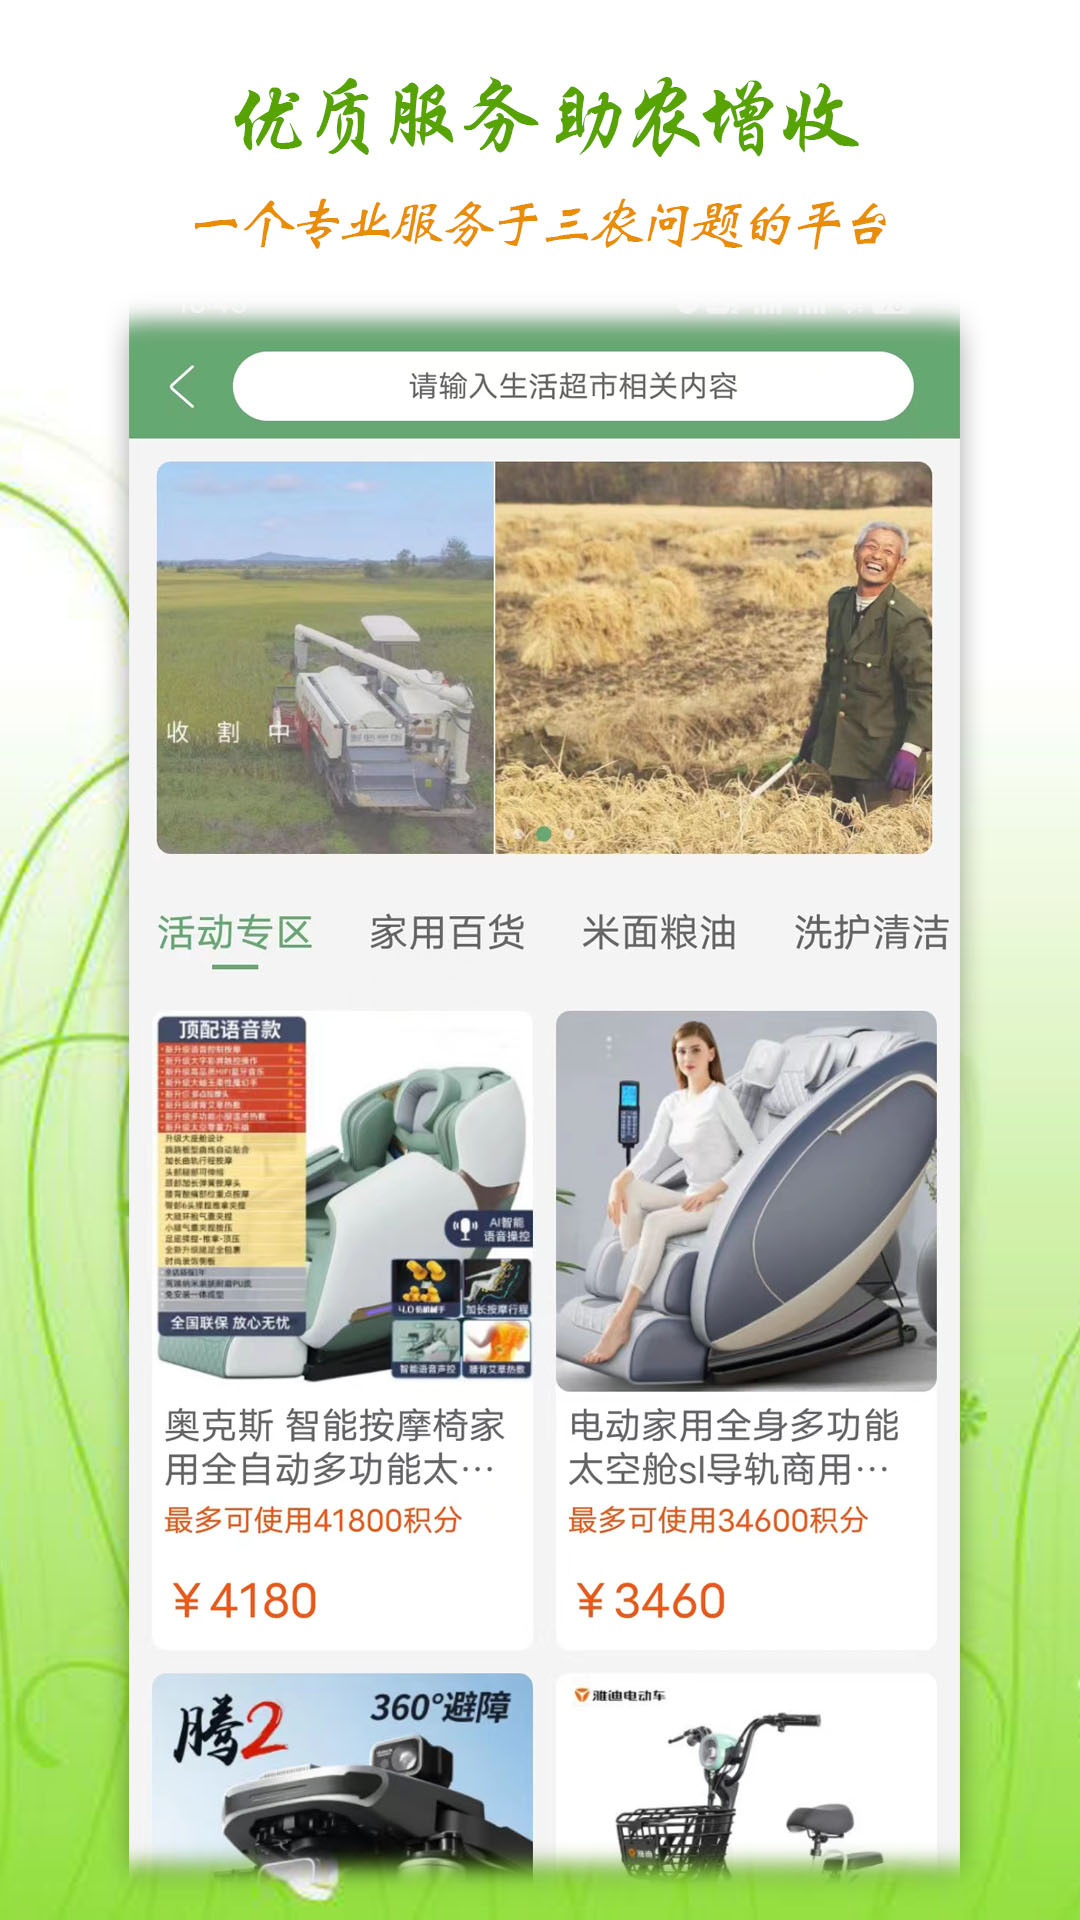 丰泰惠农服务中心下载,丰泰惠农服务中心app官方版 v1.2.8